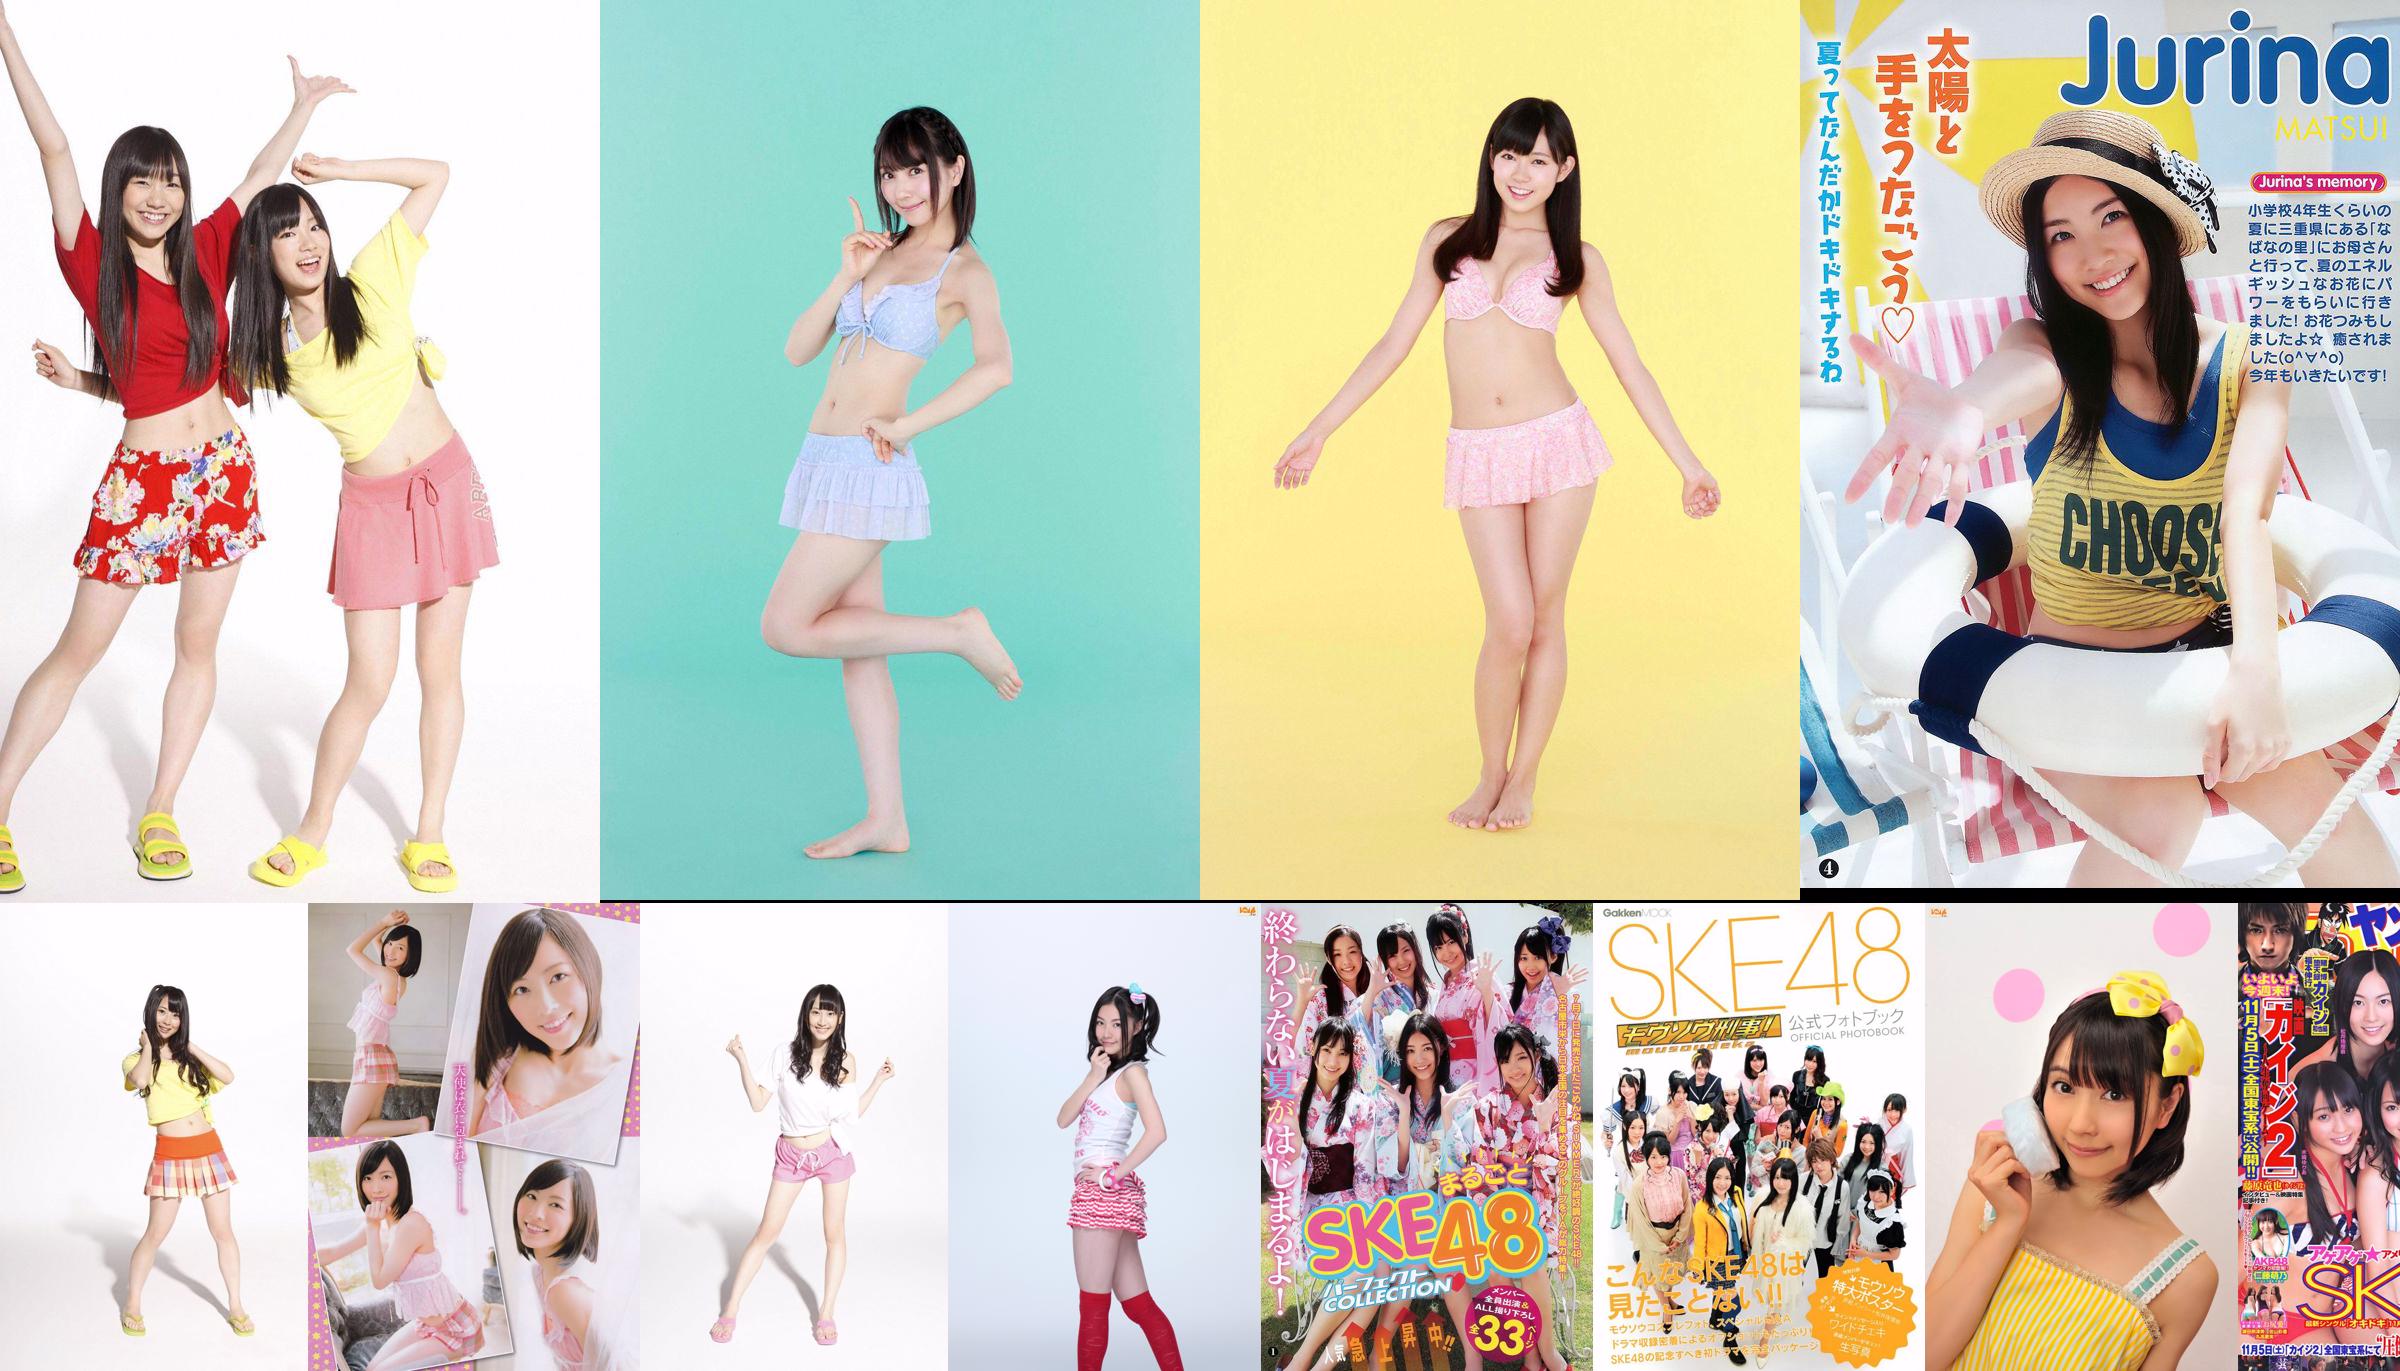 SKE48 Aikari Tree, Yoshioka Riho, Sariyama Mariko SAKURACO Tachibana Rin [Weekly Playboy] 2014 No.32 Photo Magazine No.576322 หน้า 16